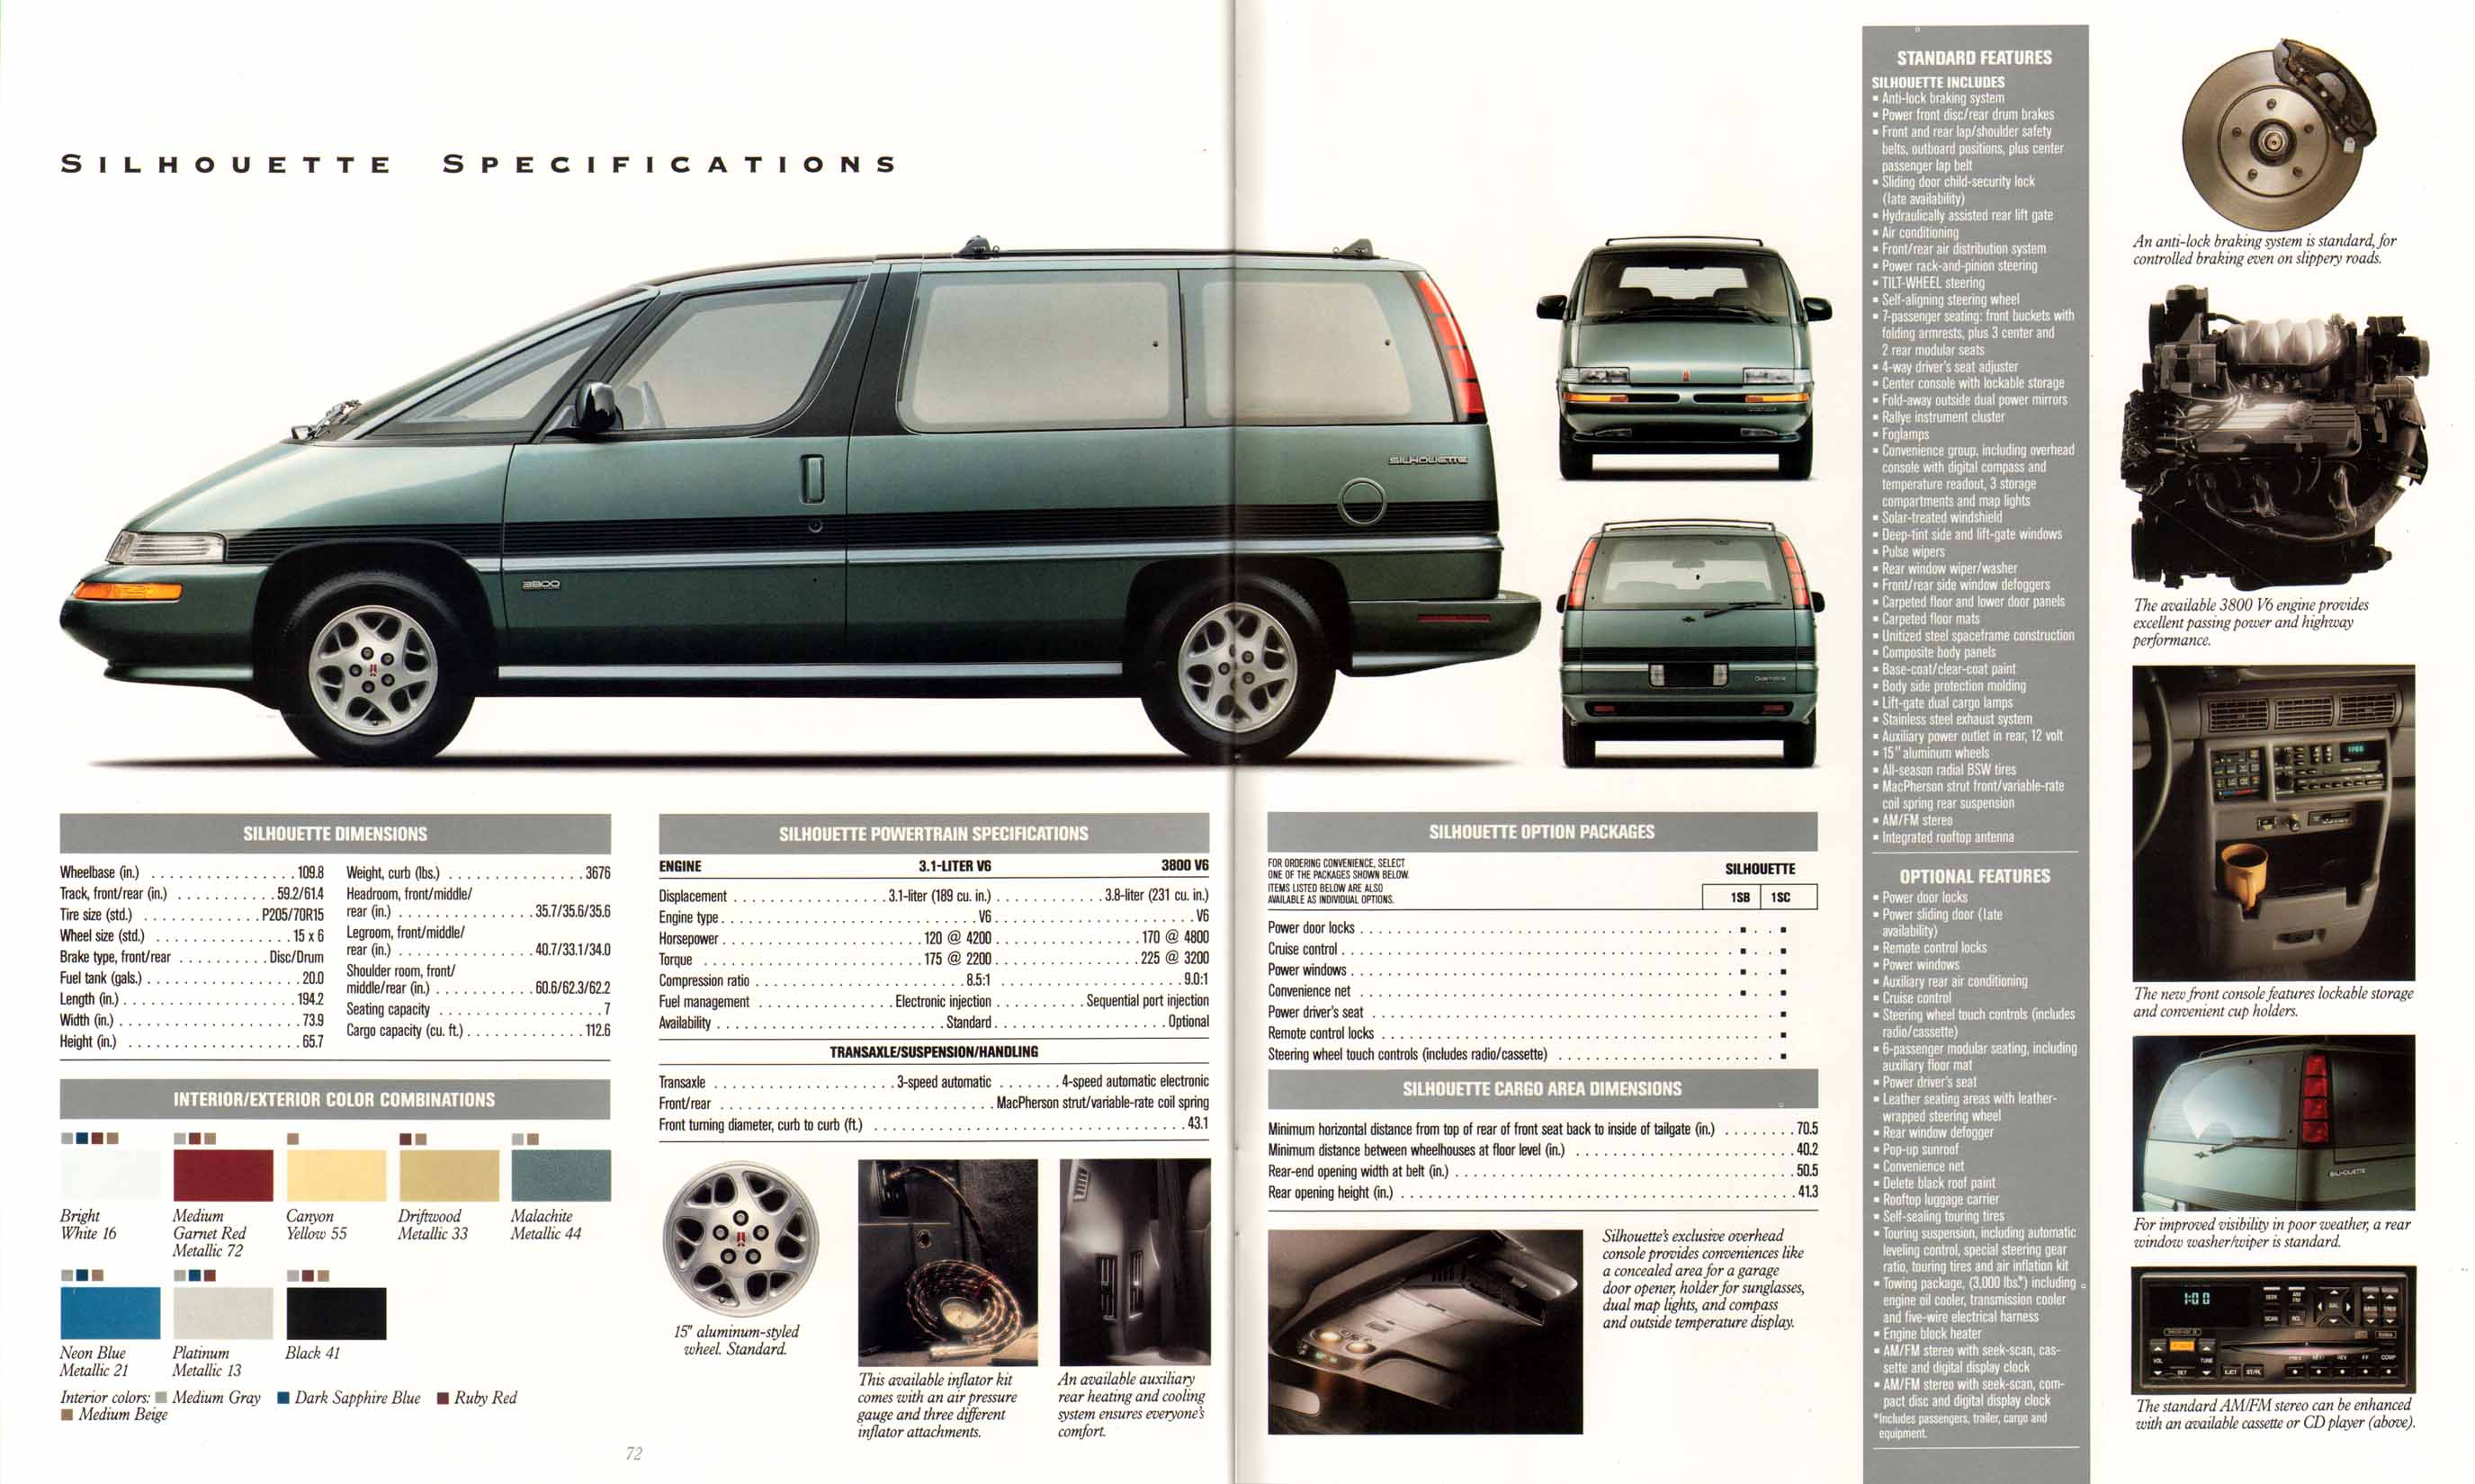 1993_Oldsmobile_Full_Line_Prestige-72-73